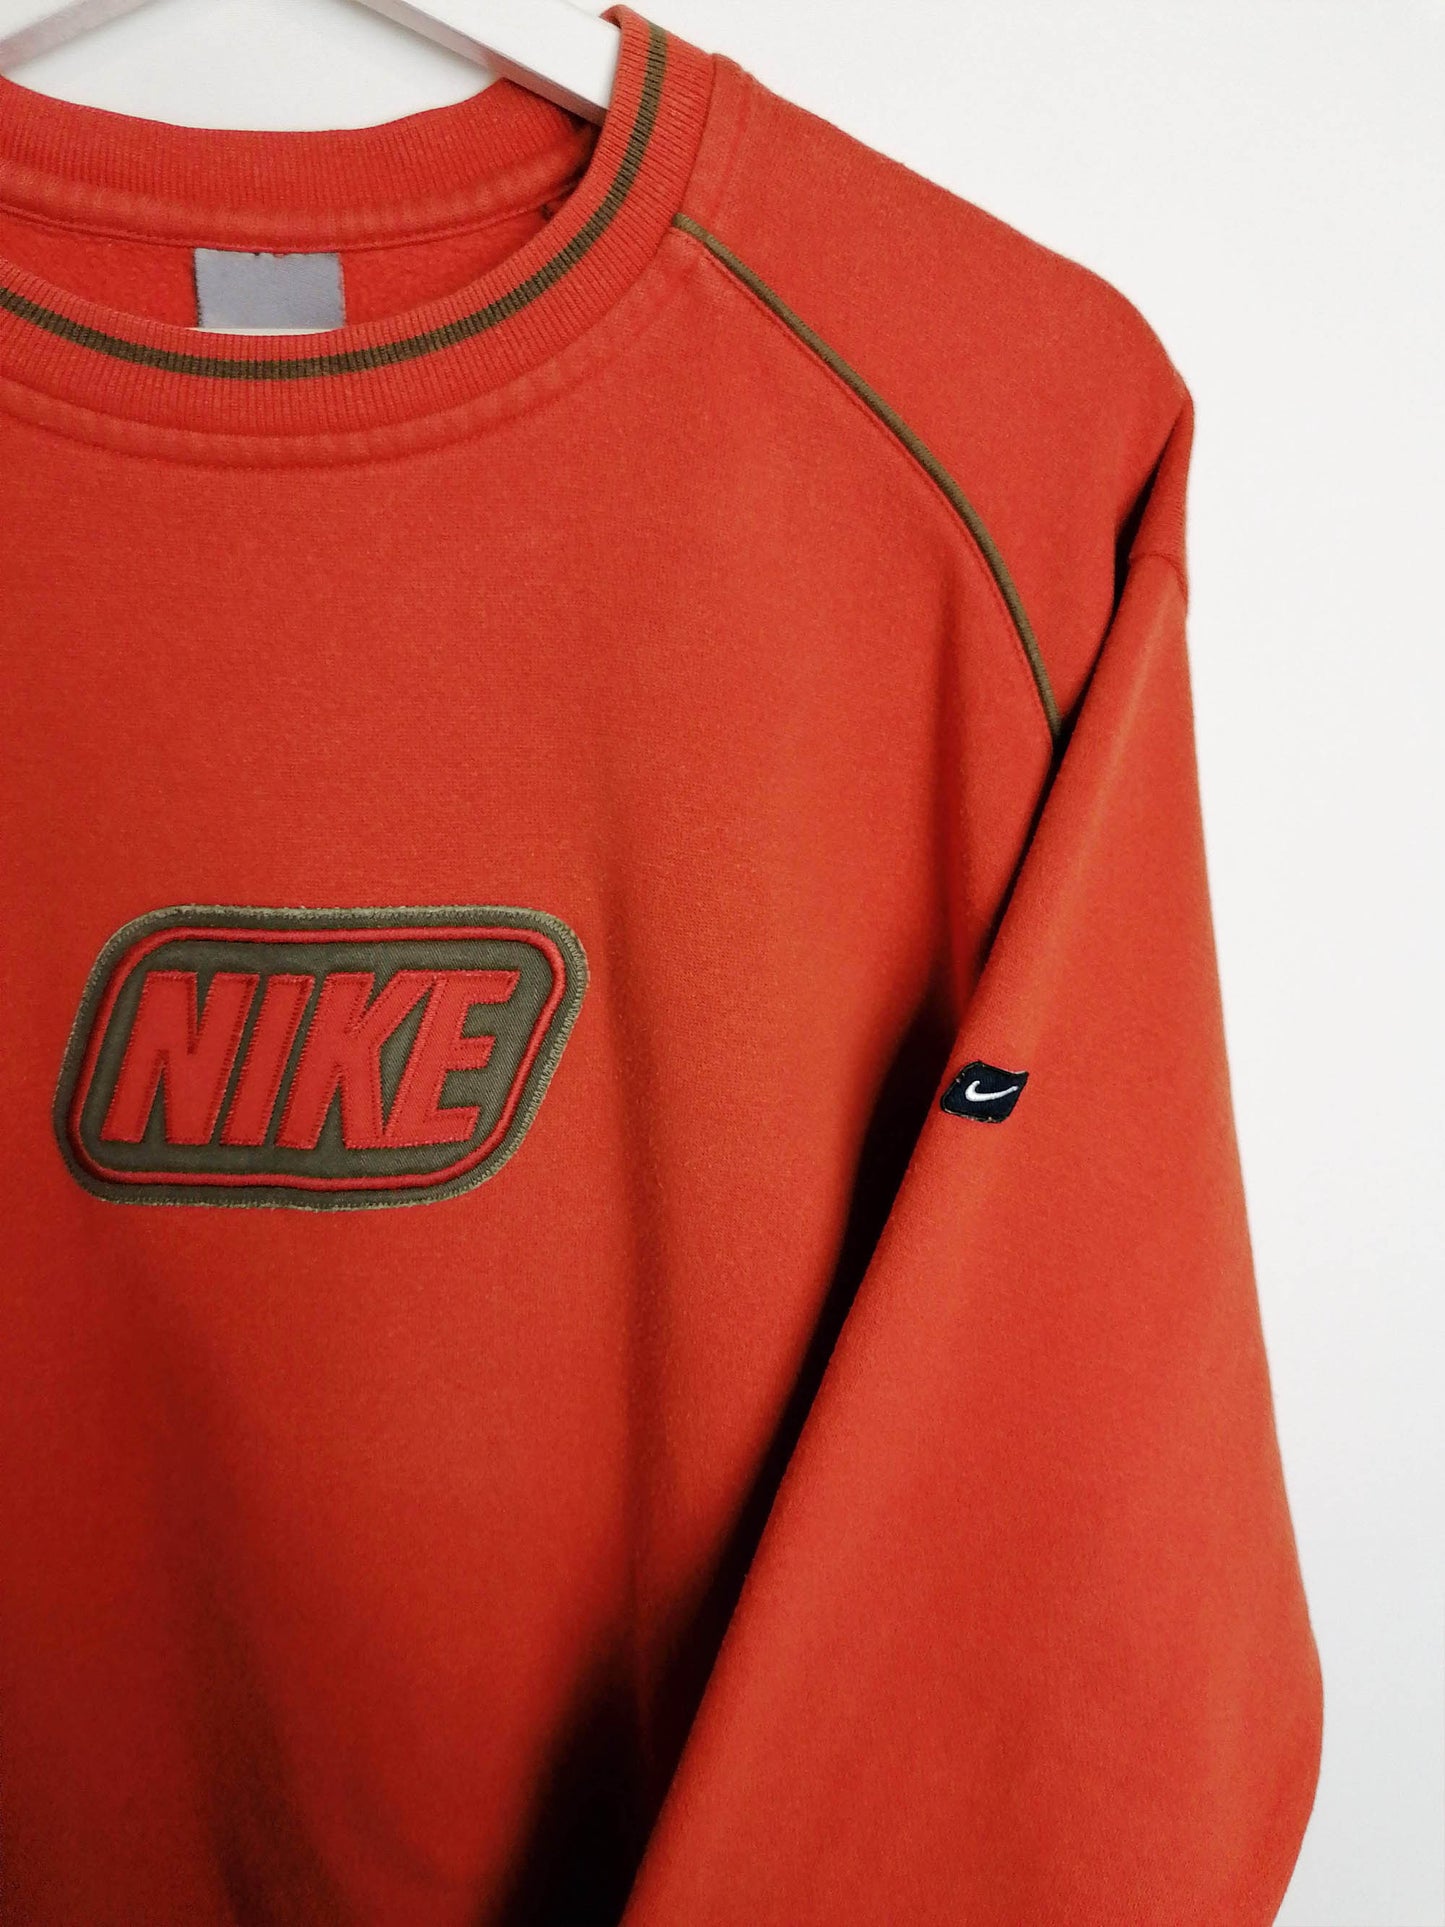 Y2K NIKE Pumpkin Spice Sweatshirt - size M-L / height 164 -176 cm